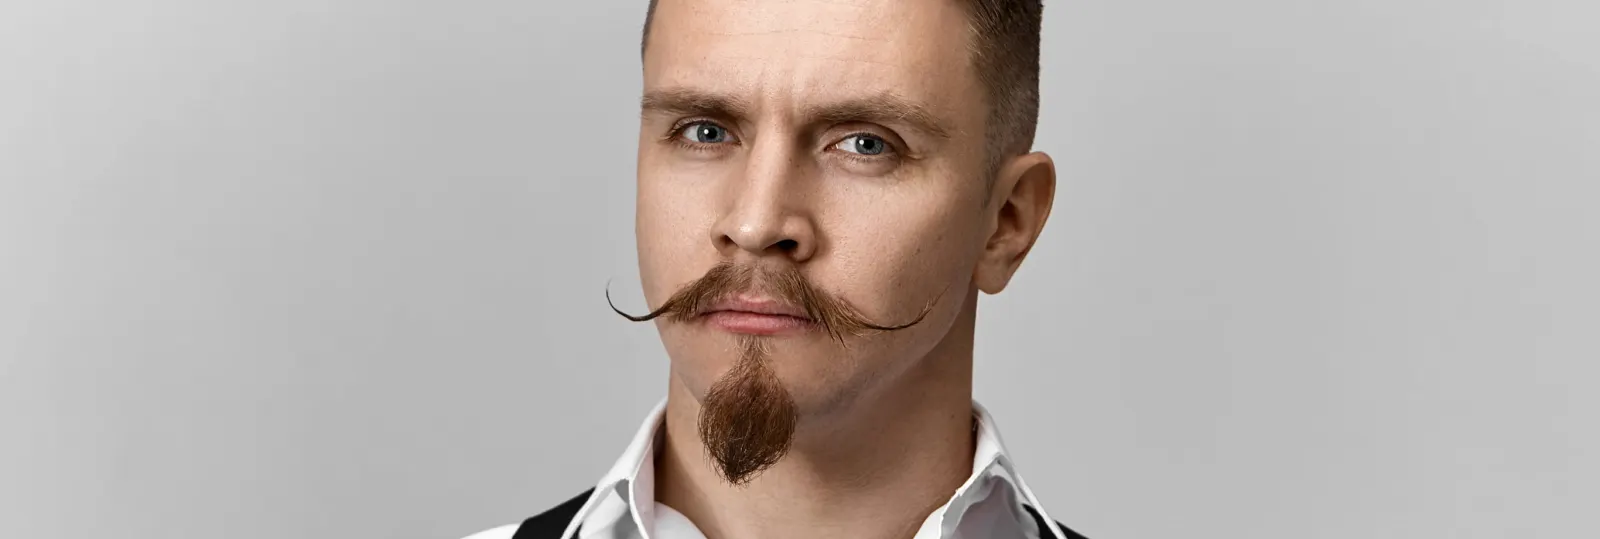 Trendige Schnurrbart-Styles für Männer